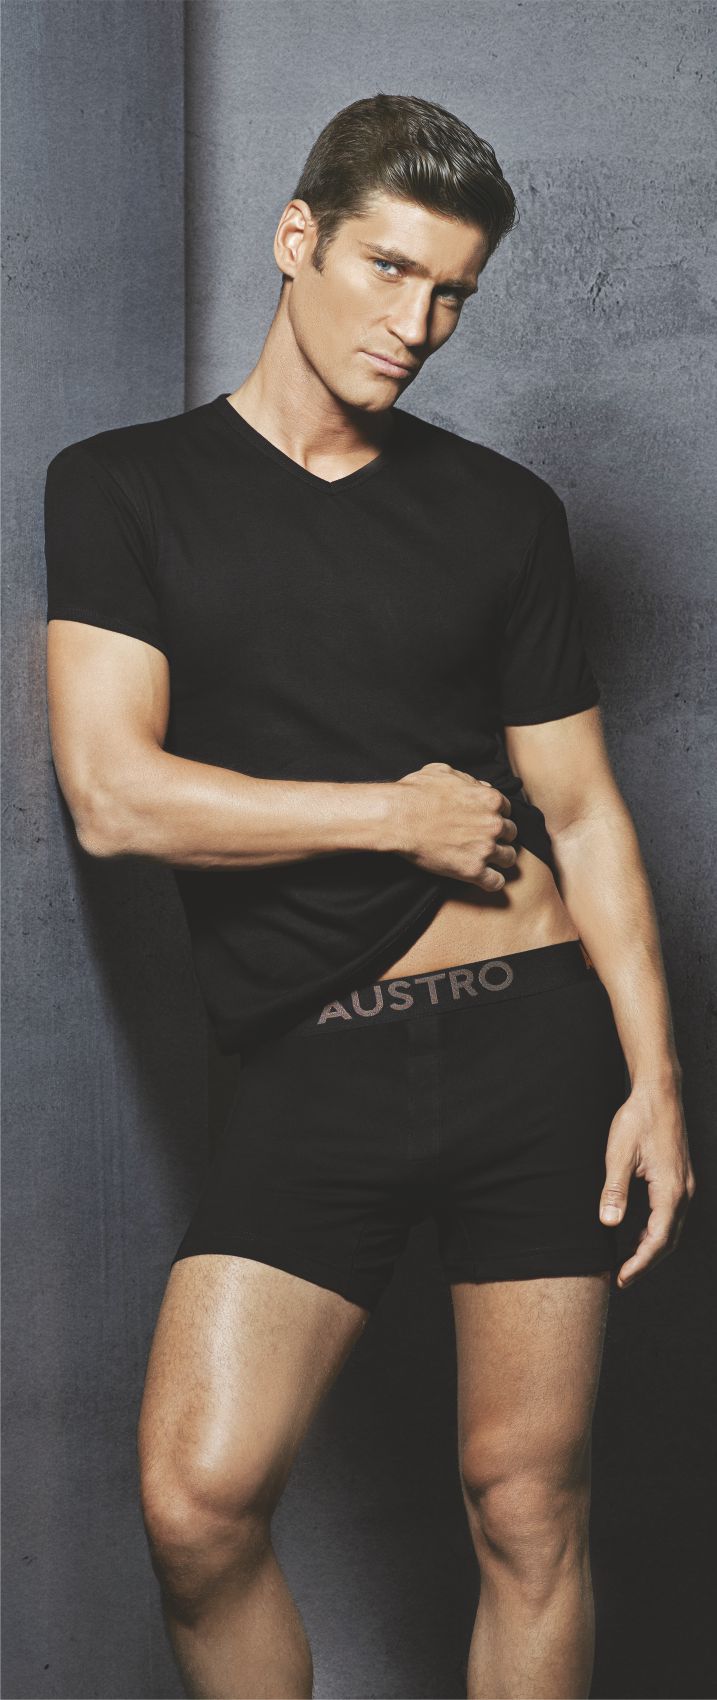 Austro Brand Innerwear , Undergarments for Men